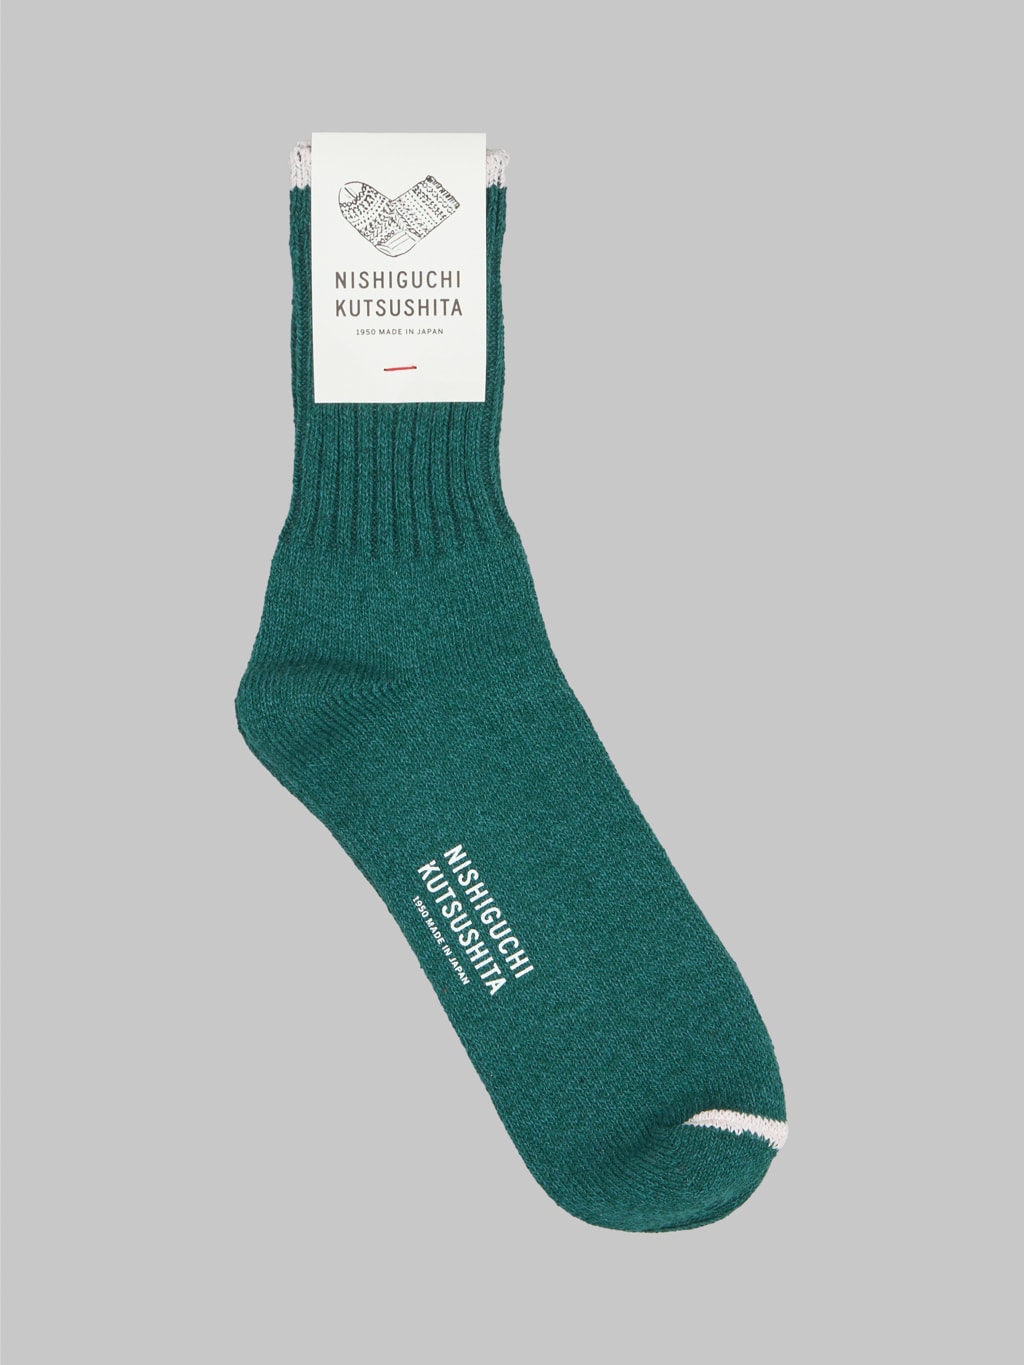 Nishiguchi Kutsushita Silk Cotton Socks Amazon